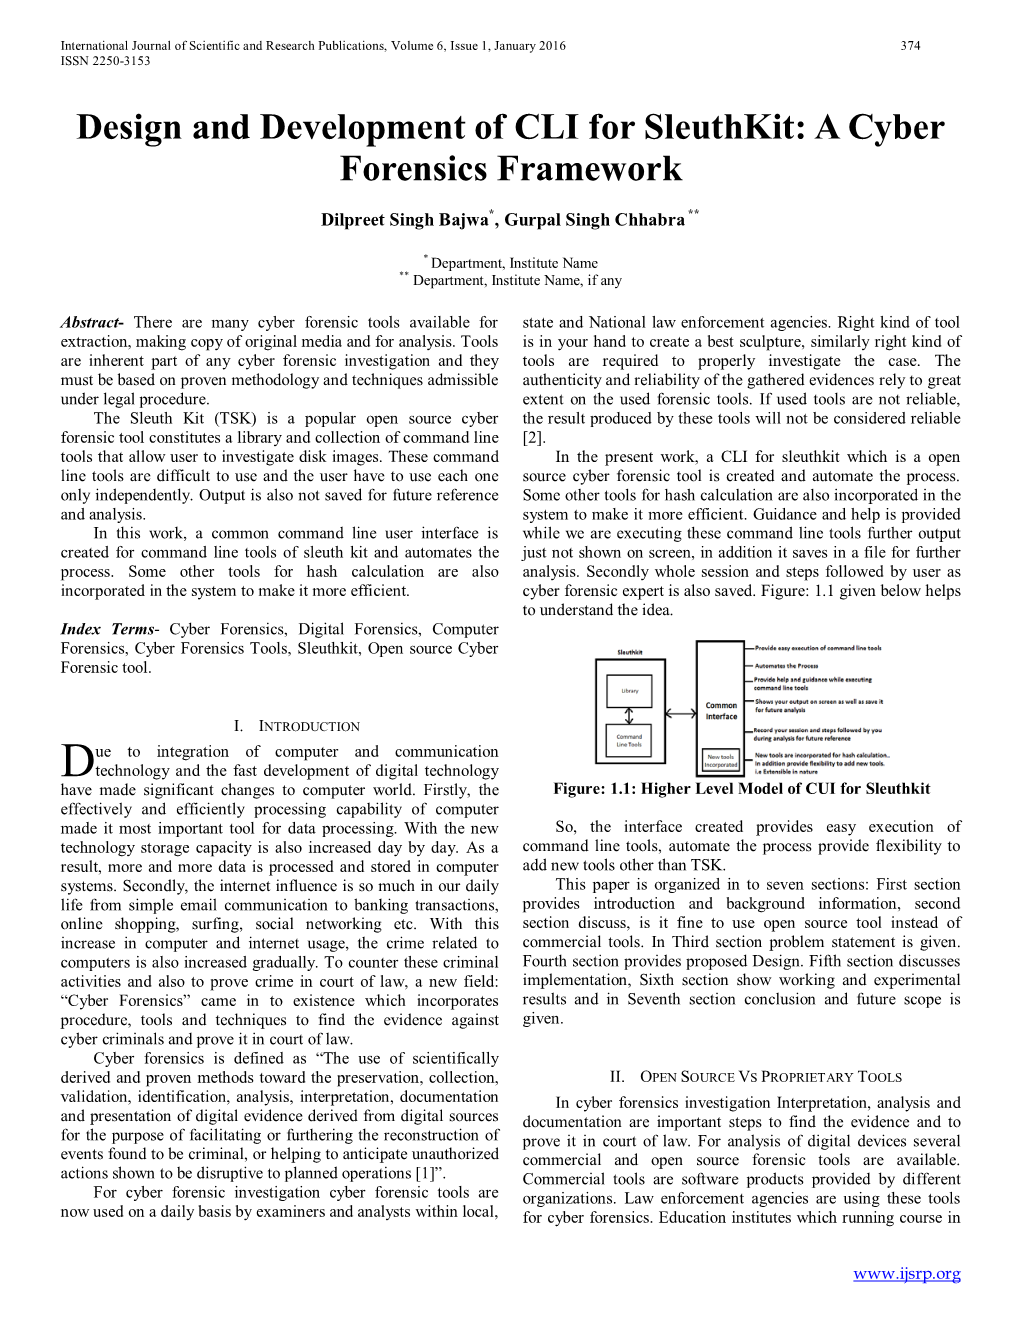 A Cyber Forensics Framework